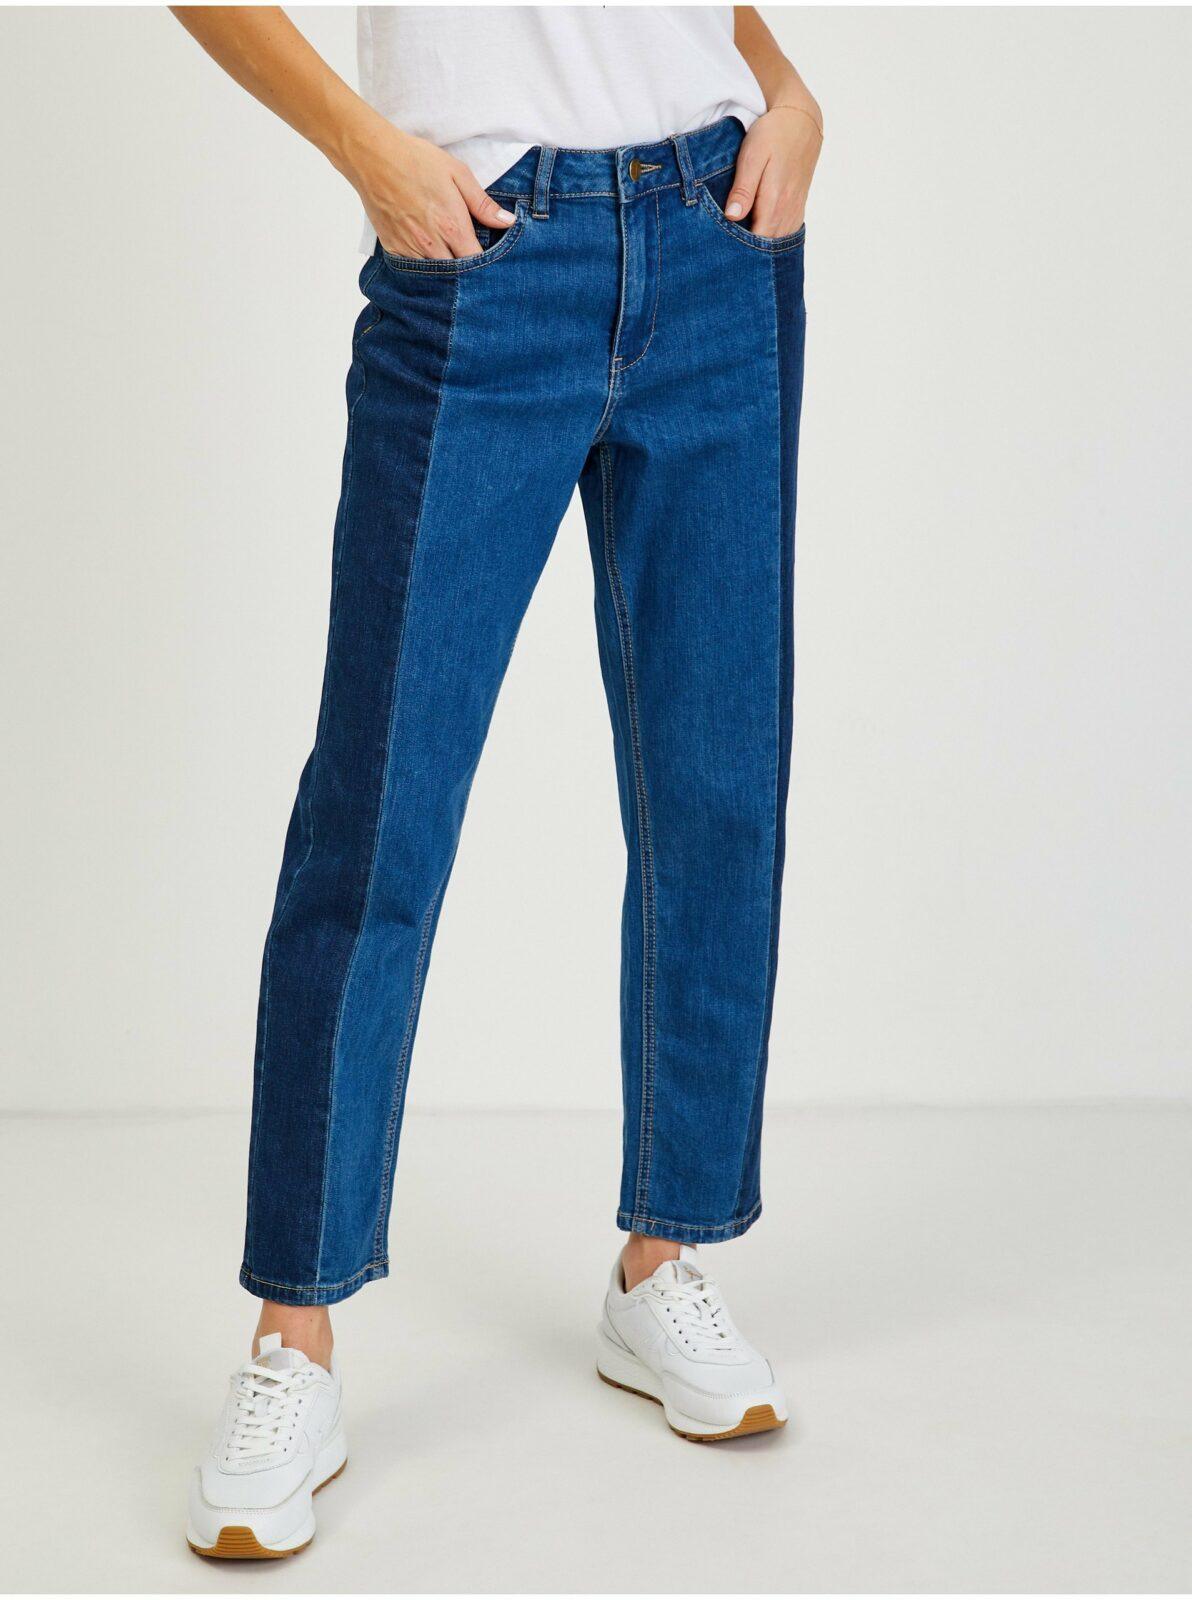 Tmavě modré dámské straight fit džíny